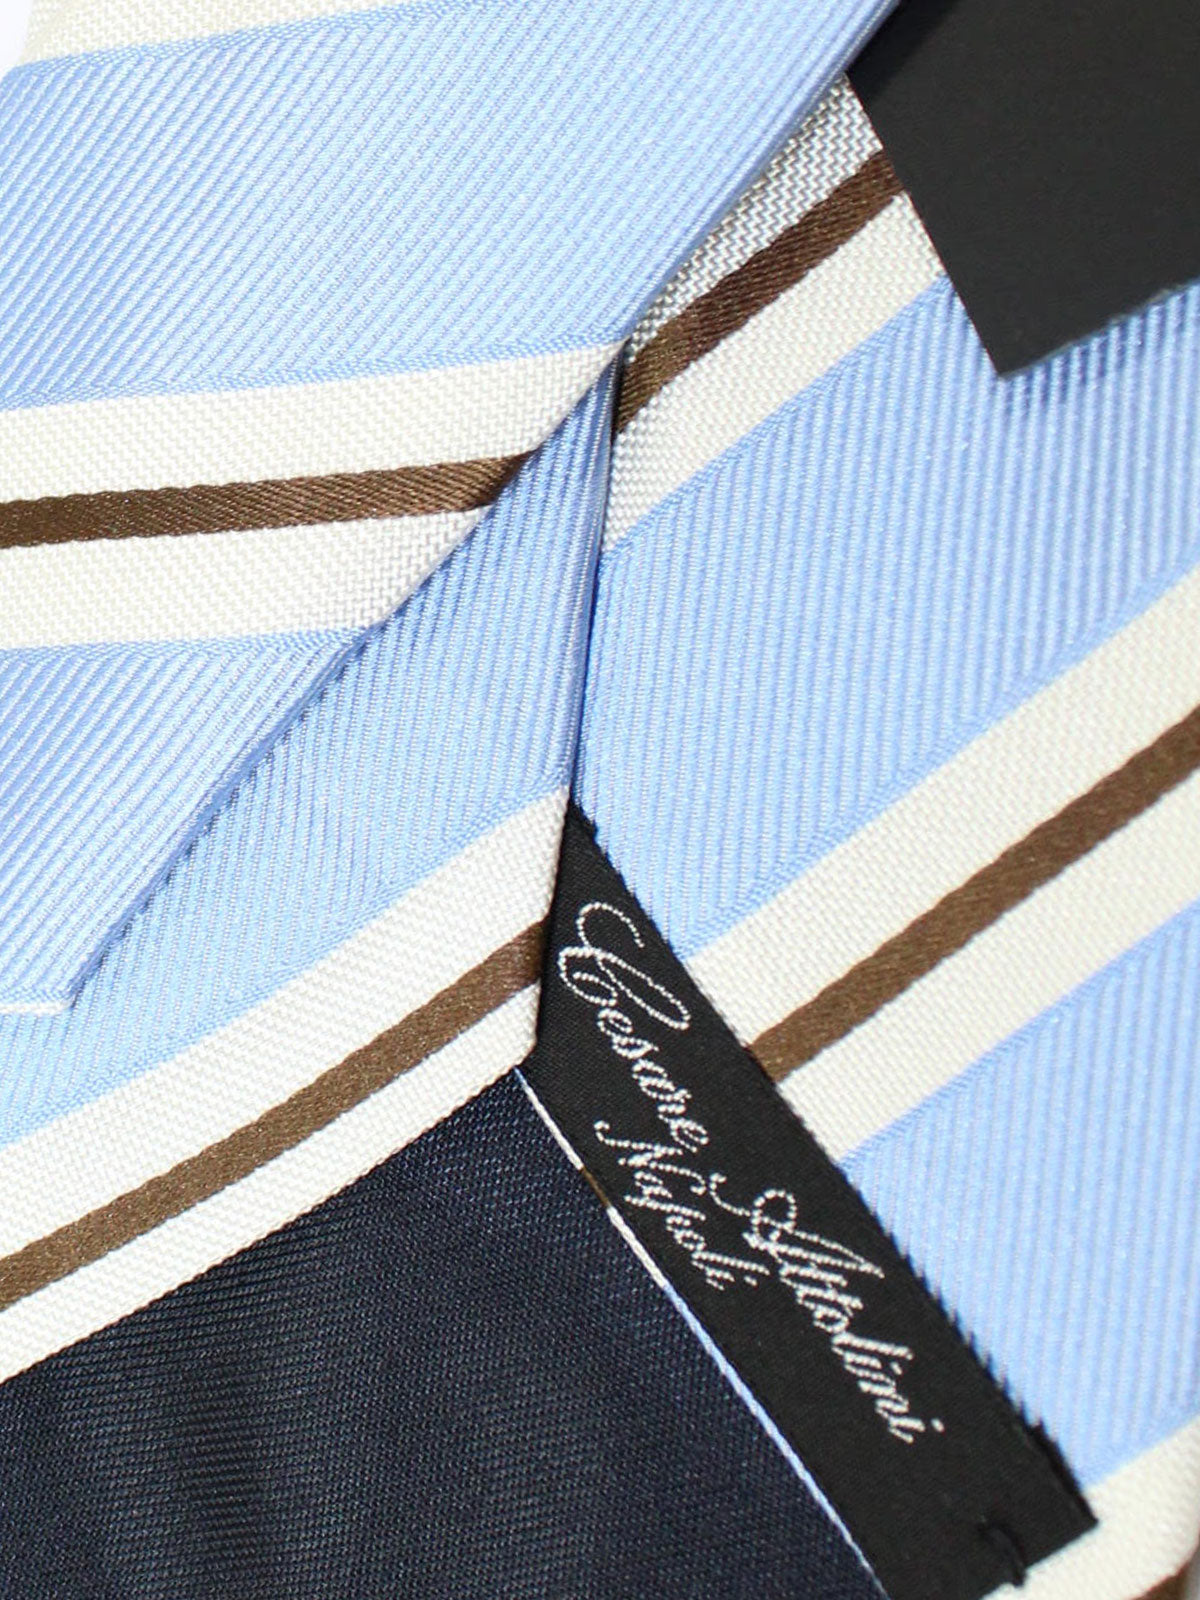 Cesare Attolini Tie Sky Blue Silver Brown Stripes